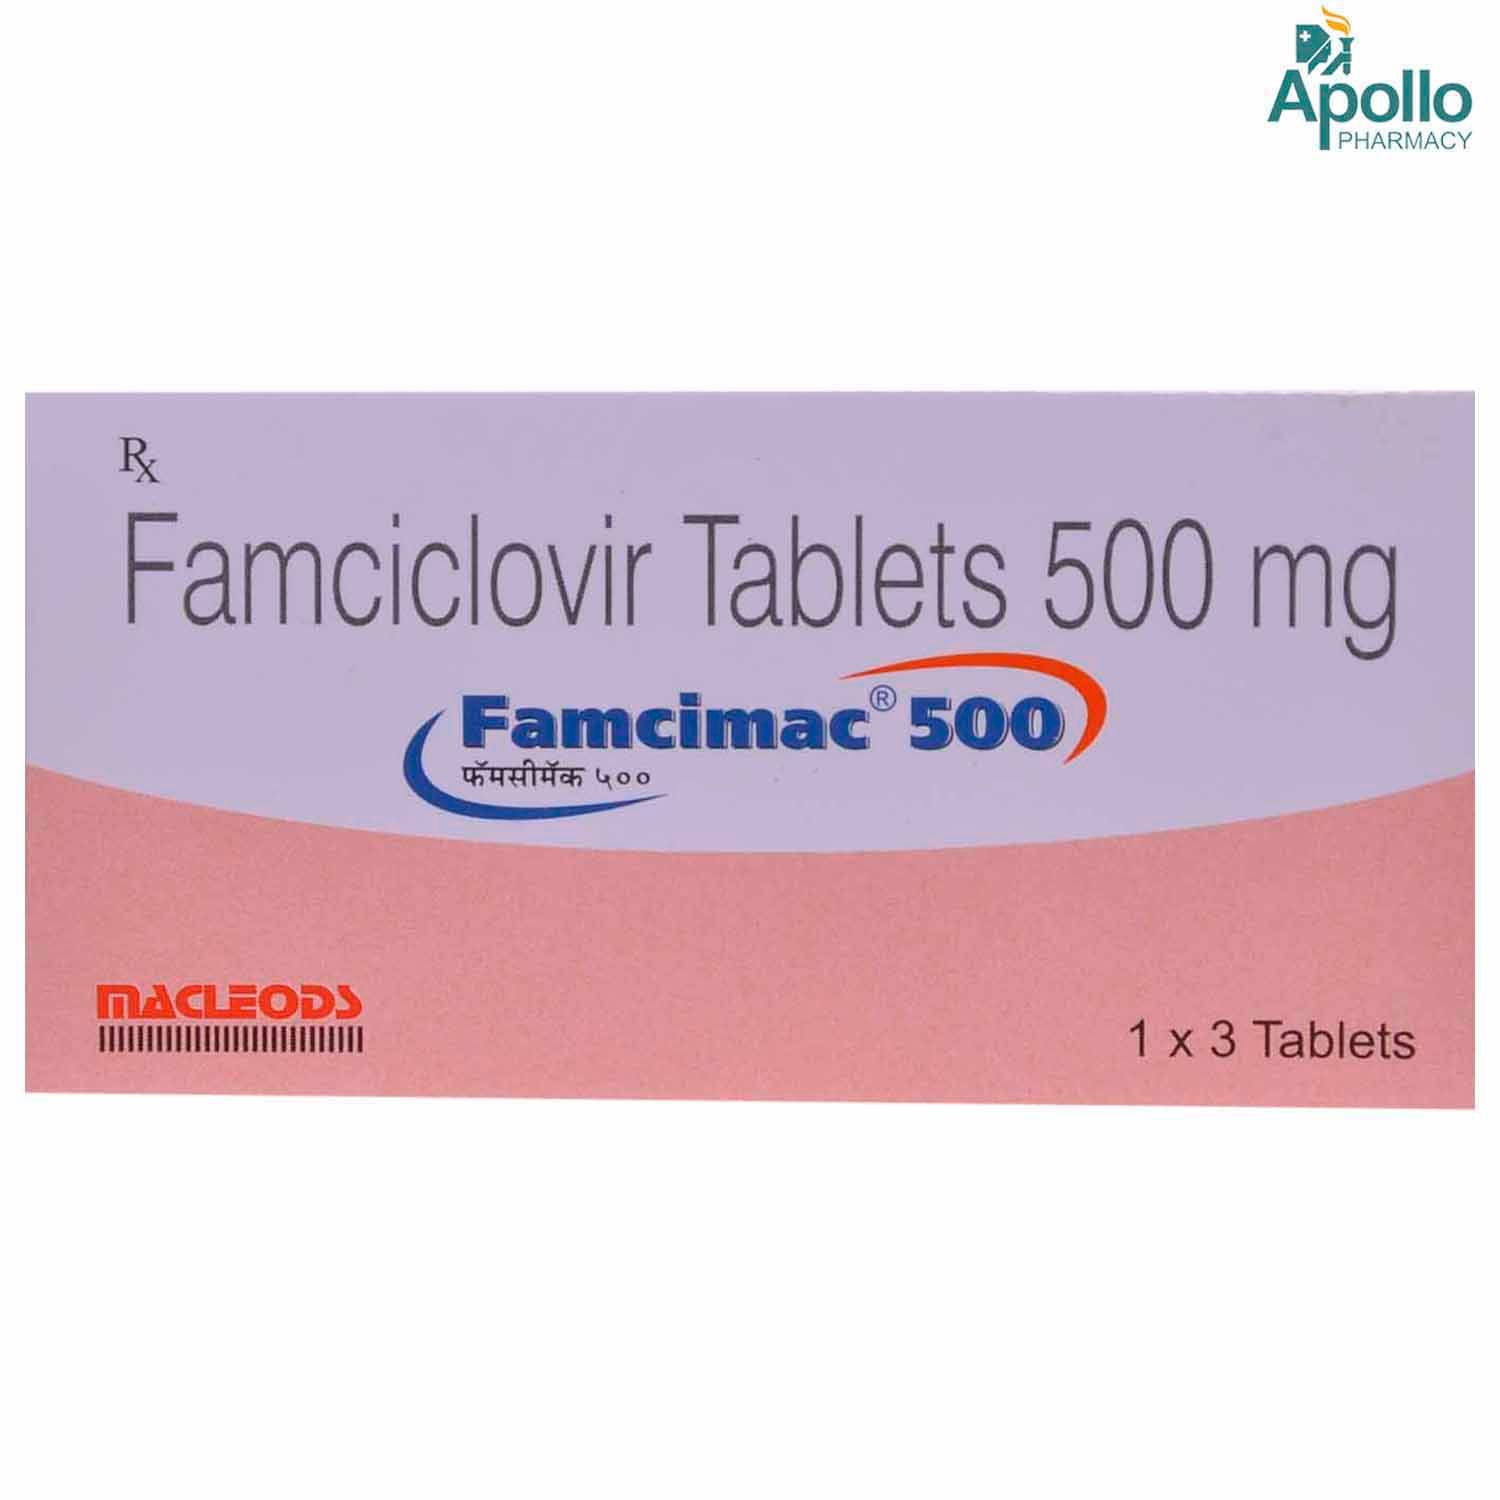 Buy Famcimac 500 Tablet 3's Online